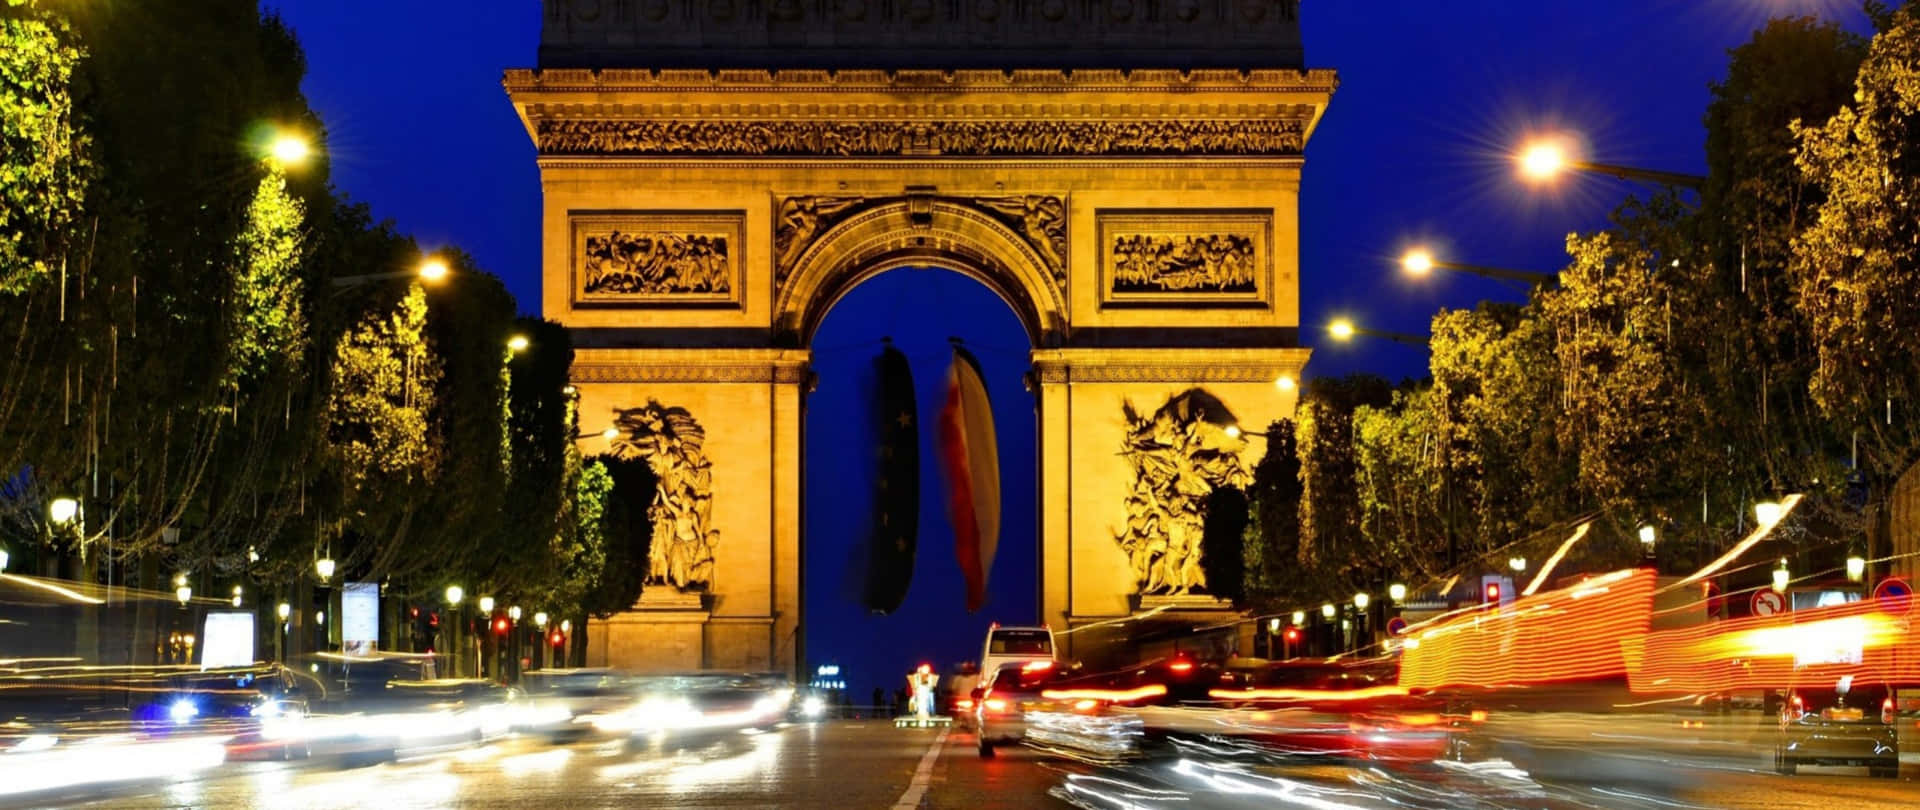 Illuminated Arch In Paris Wallpaper